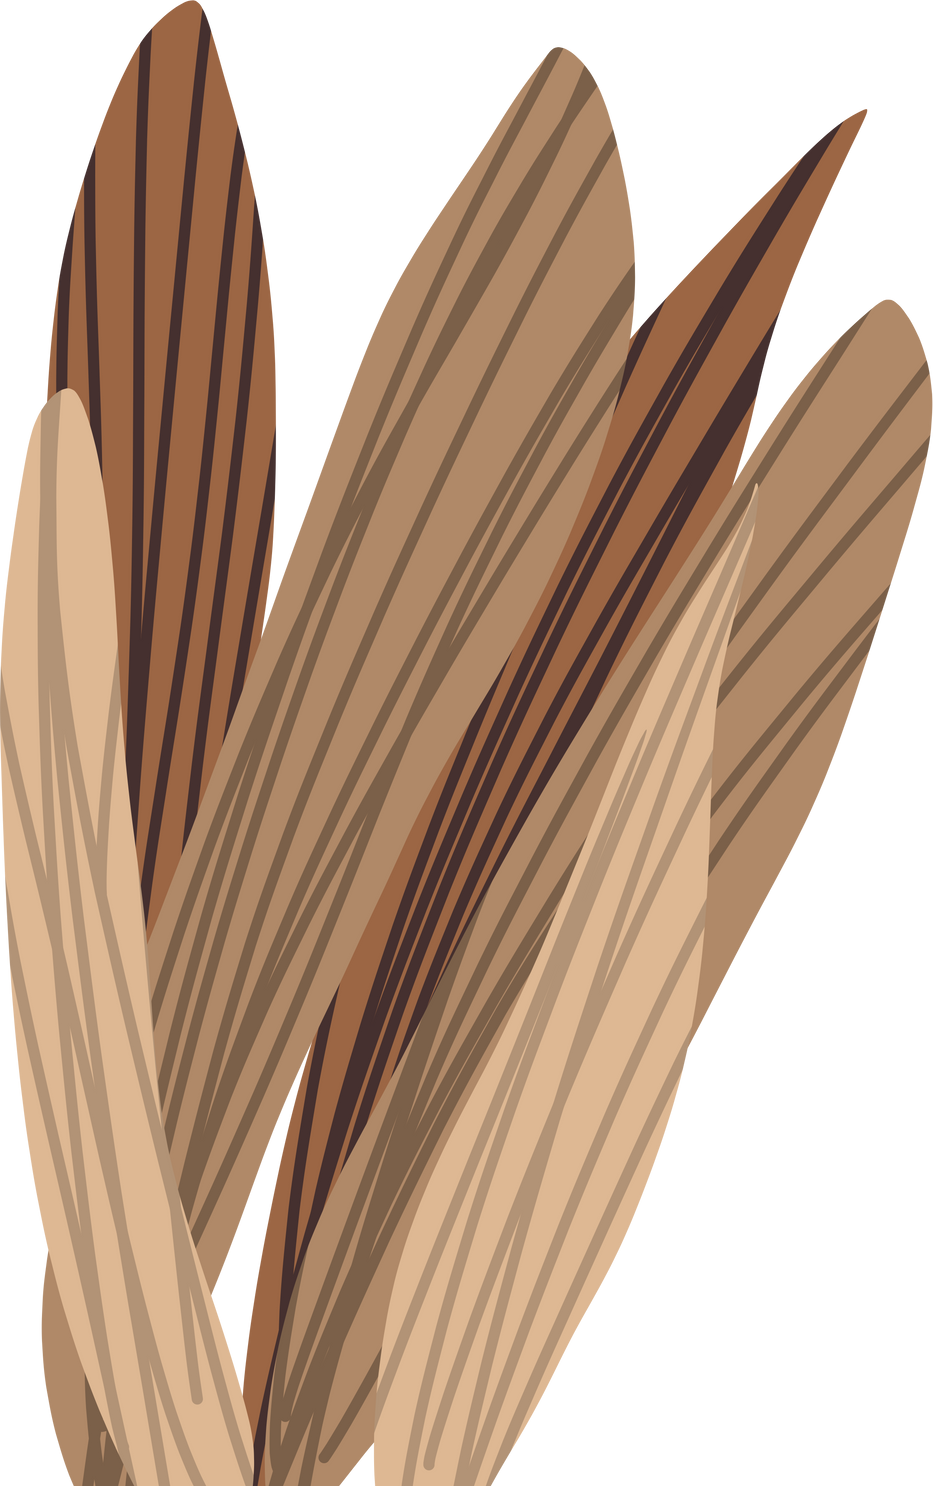 Aesthetic leaves brown